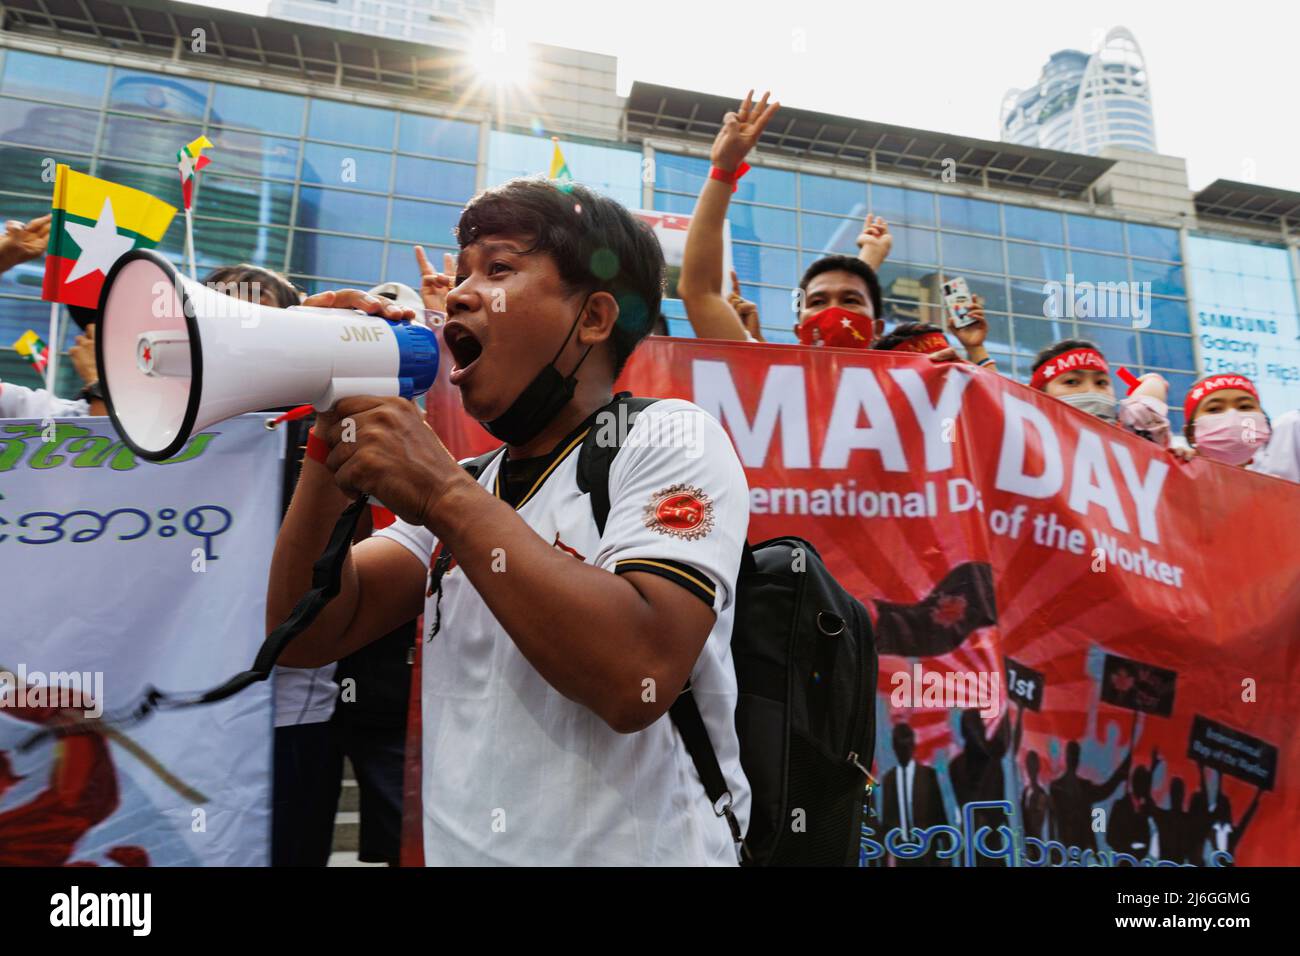 Während der Demonstration sah man einen in Myanmar demonstrierten Redner auf einem Megaphon. Die Arbeitergewerkschaft veranstaltete am Tag der Arbeit in Bangkok, Thailand, eine Parade. An der Parade nahmen verschiedene Gruppen Teil, darunter die thailändische Arbeitergruppe, die myanmarische Arbeitergruppe und die pro-demokratische Gruppe. Sie versammelten sich an der Ratchaprosong Road und marschierten dann zur Kreuzung Pathumwan, Demonstranten forderten Wohlfahrt, faire Zinszahlungen und auch Demokratie (einschließlich Thailand und Myanmar). Stockfoto